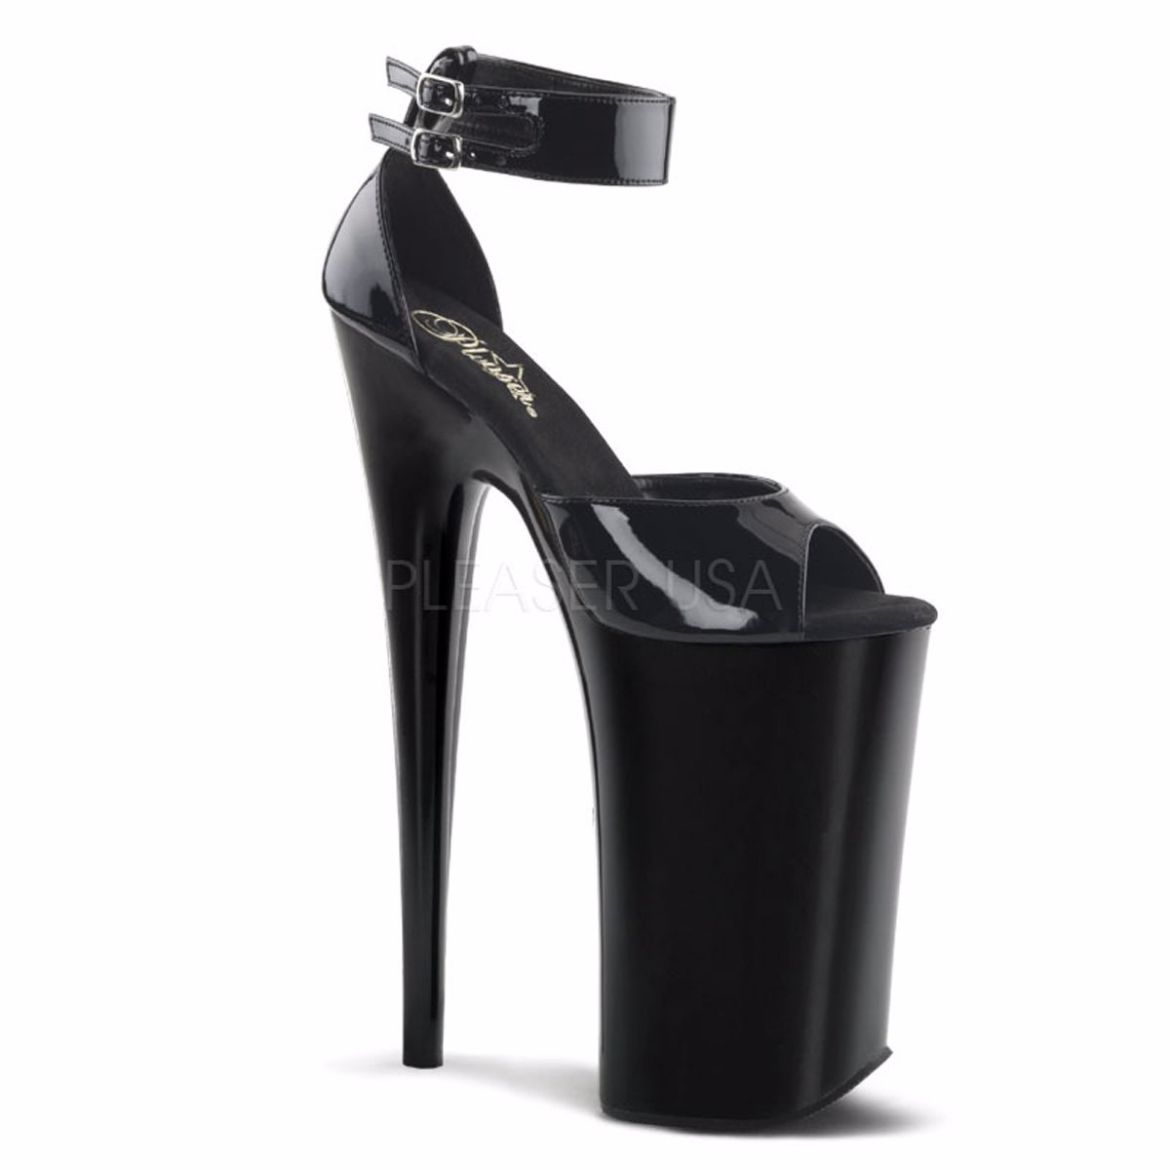 Product image of Pleaser Beyond-089 Black/Black, 10 inch (25.4 cm) Heel, 6 1/4 inch (15.9 cm) Platform Sandal Shoes